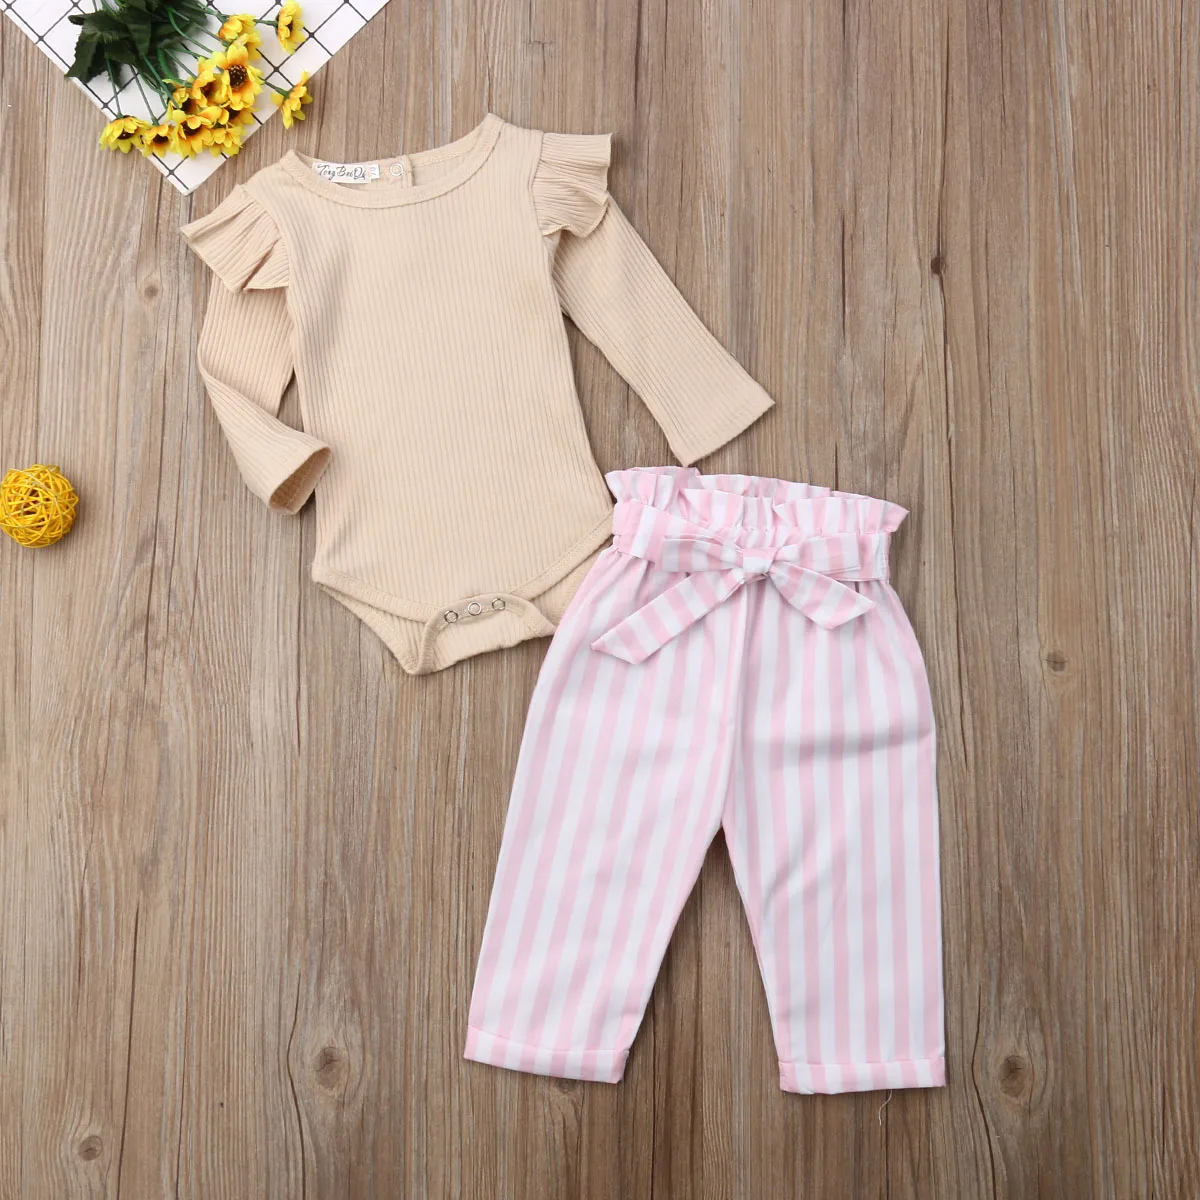 Комплект одежды для новорожденных девочек от 0 до 24 месяцев, однотонный комбинезон с оборками+ штаны в полоску с бантом, одежда для малышей Осенние костюмы